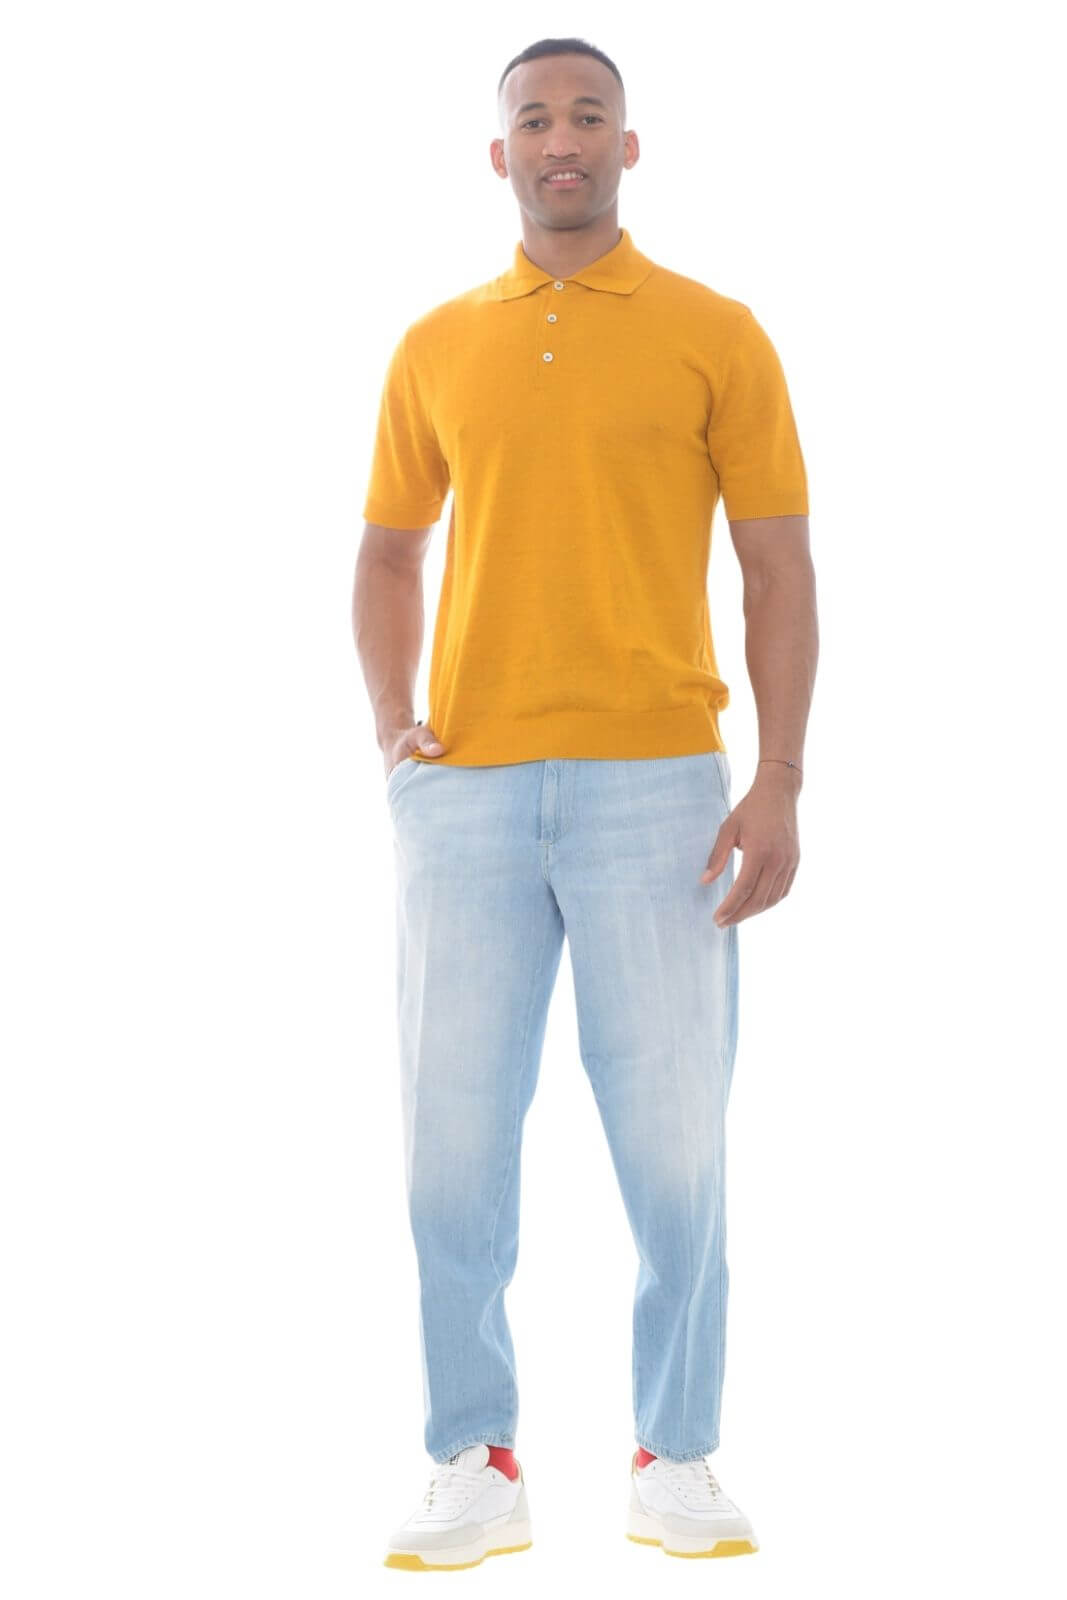 Dondup jeans uomo JOHN loose fit